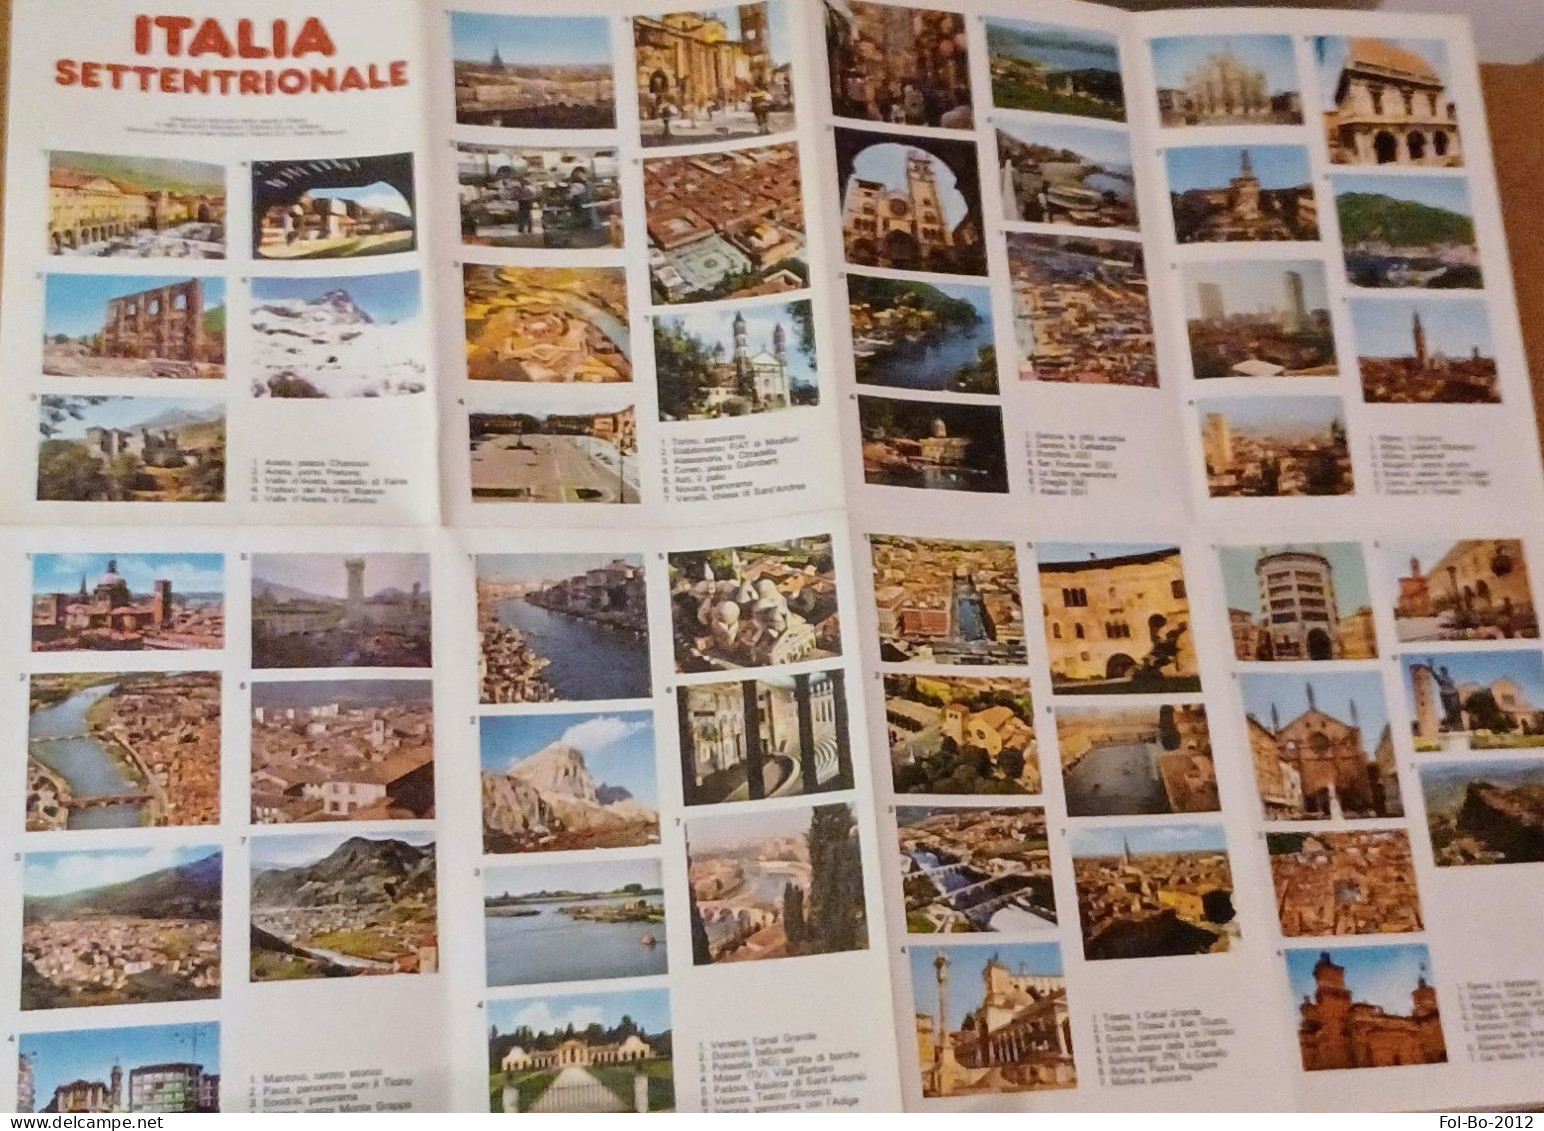 Manuale Delle Regioni D'italia Mondadori 1987+mini Poster - Turismo, Viaggi